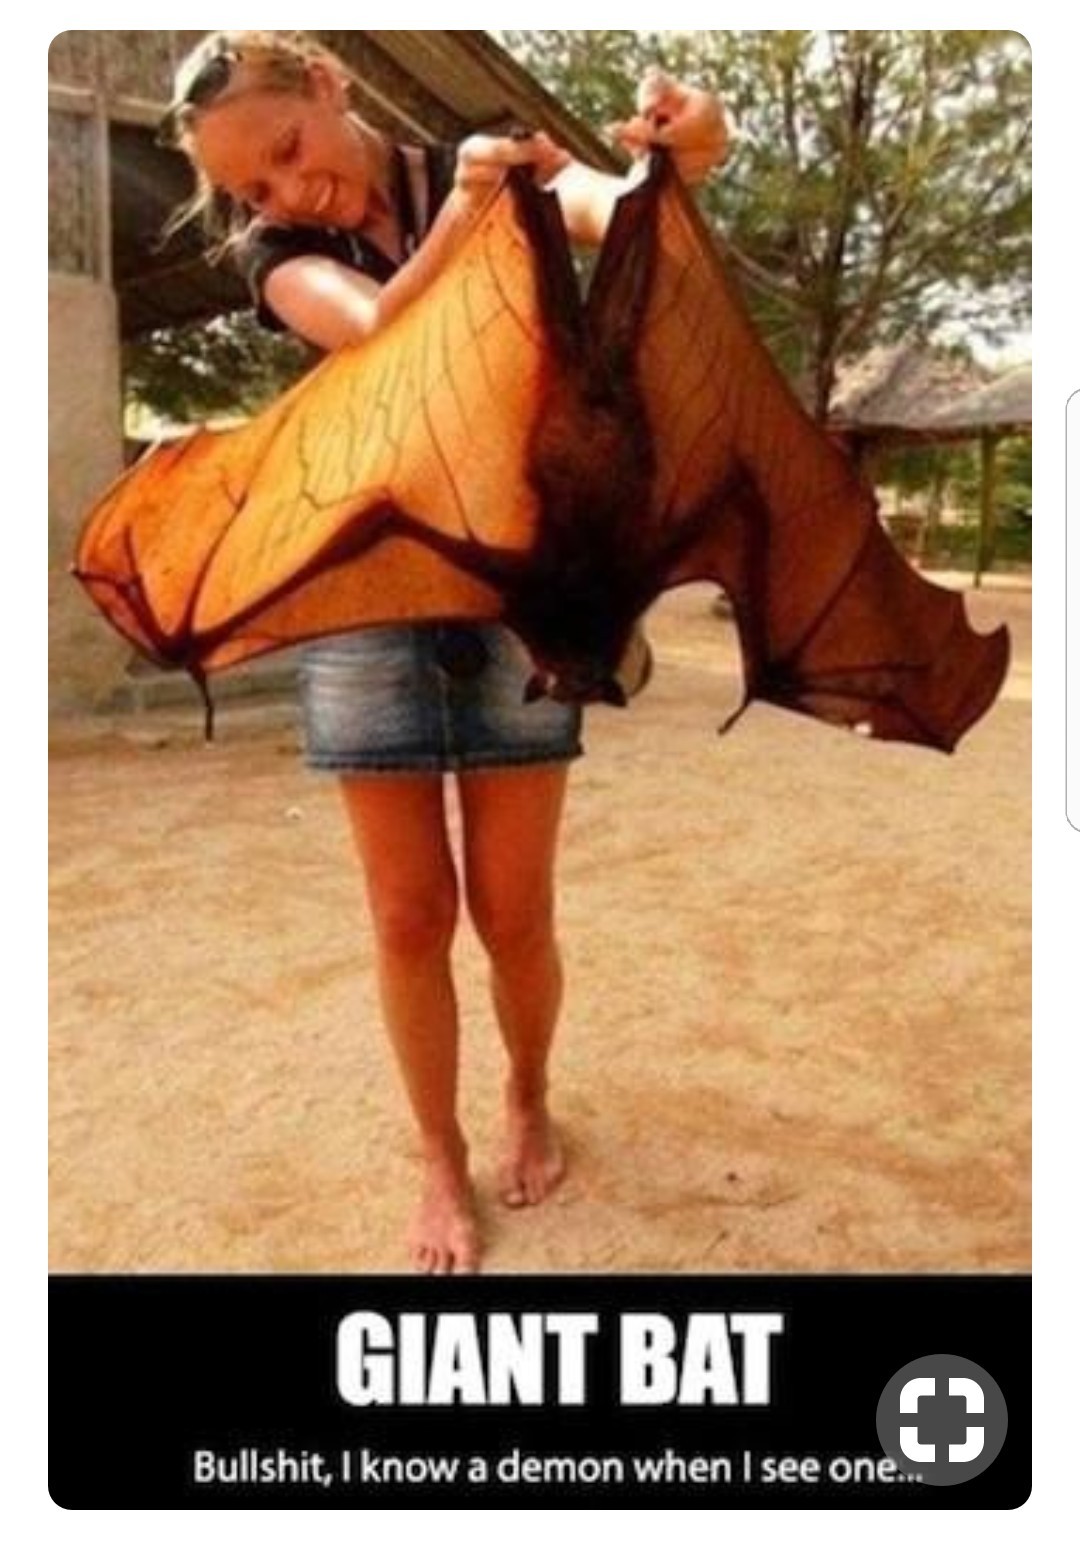 Large bat. - meme